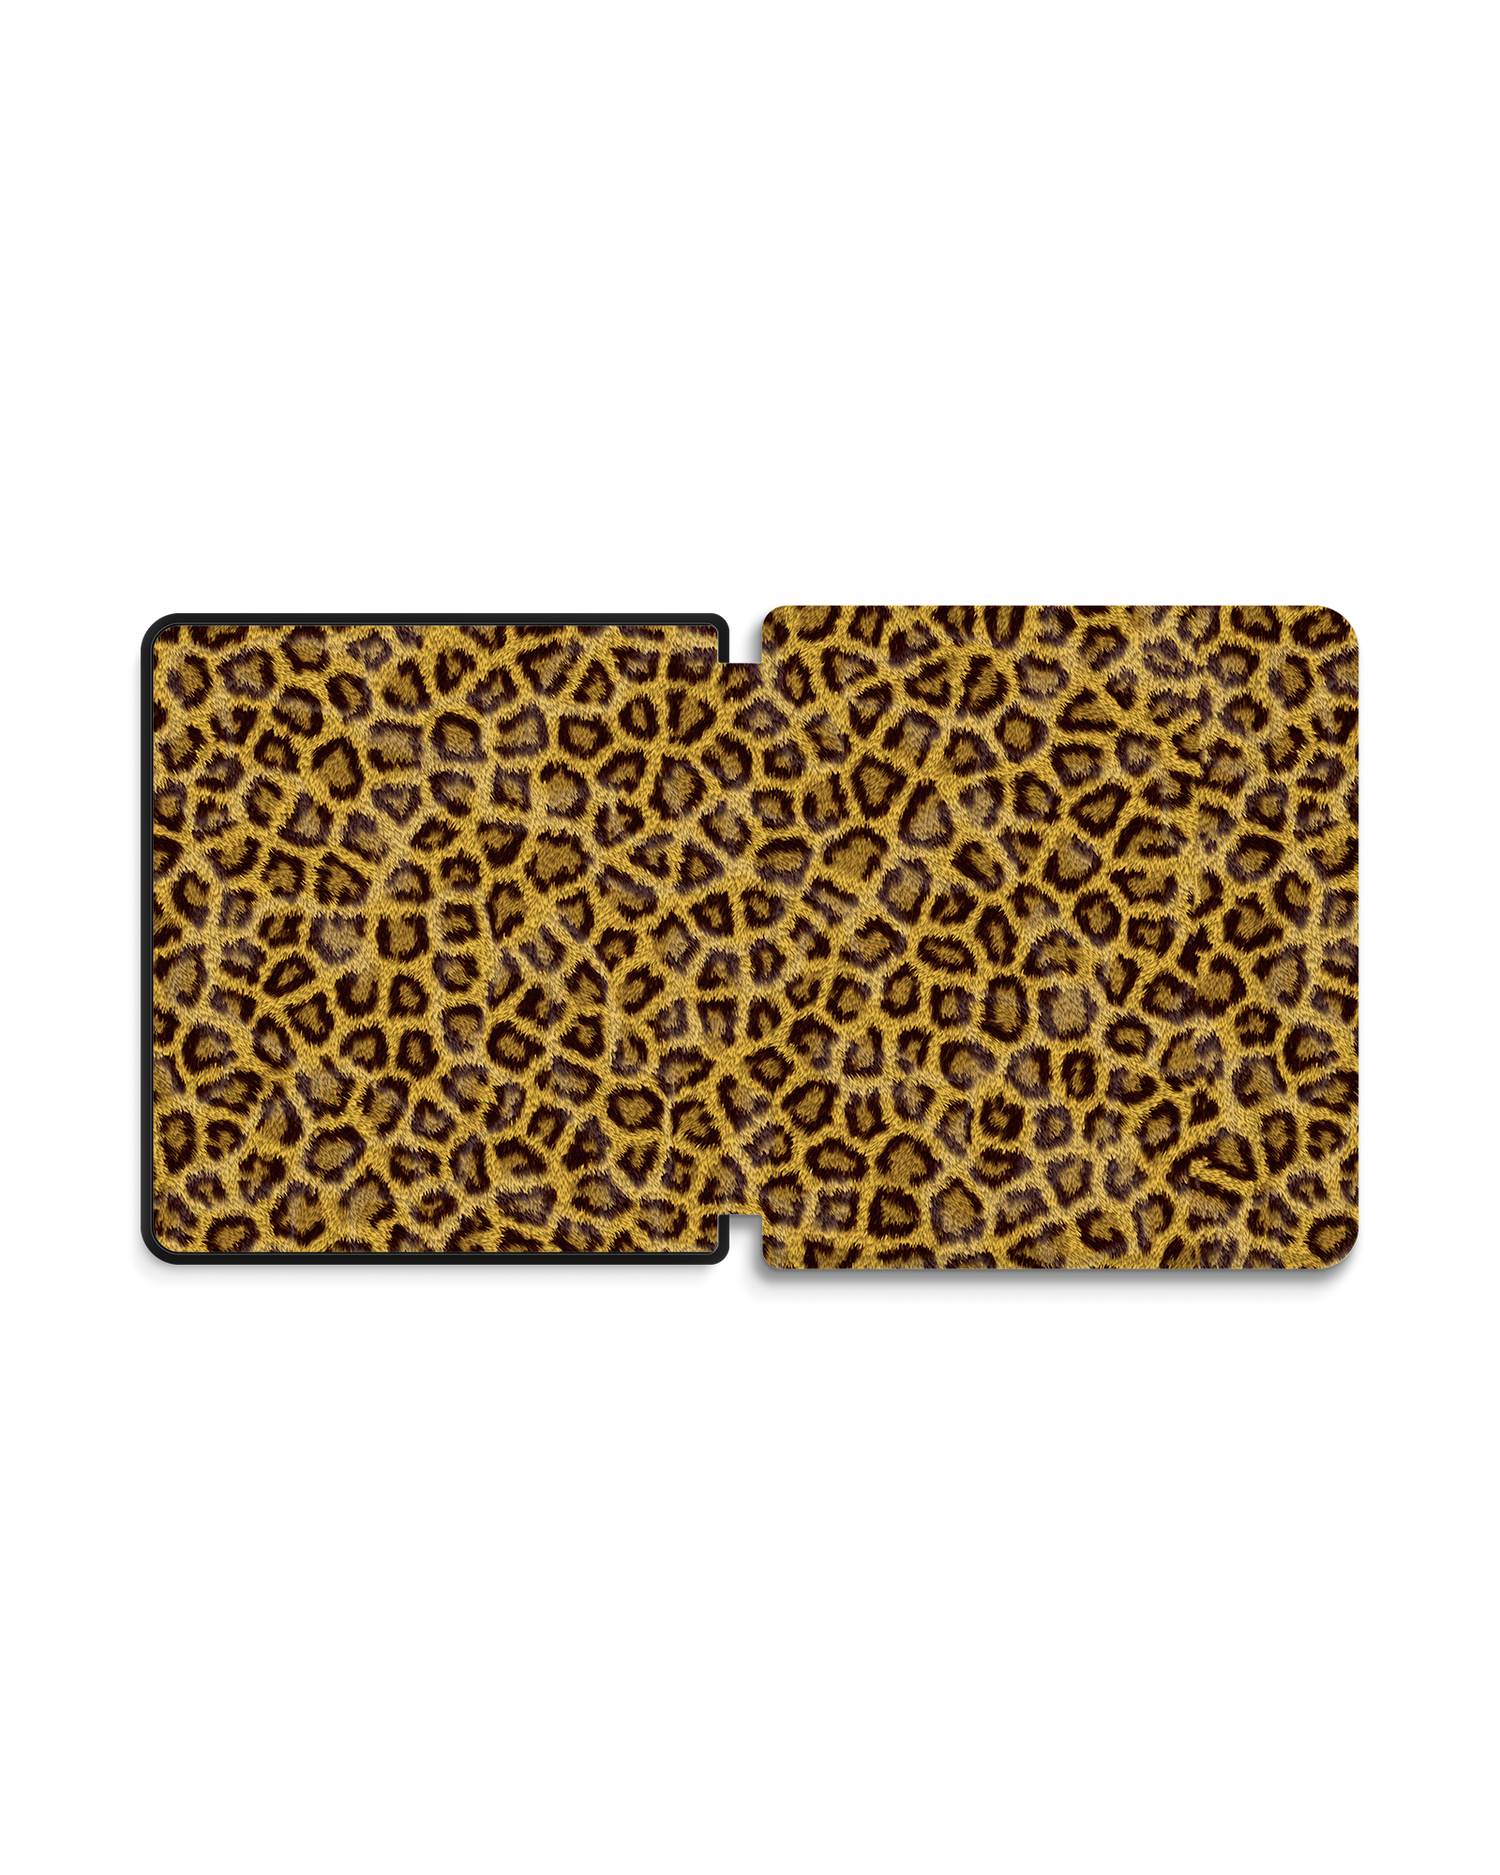 Leopard Skin eBook Reader Smart Case für tolino epos 2: Geöffnet Außenansicht